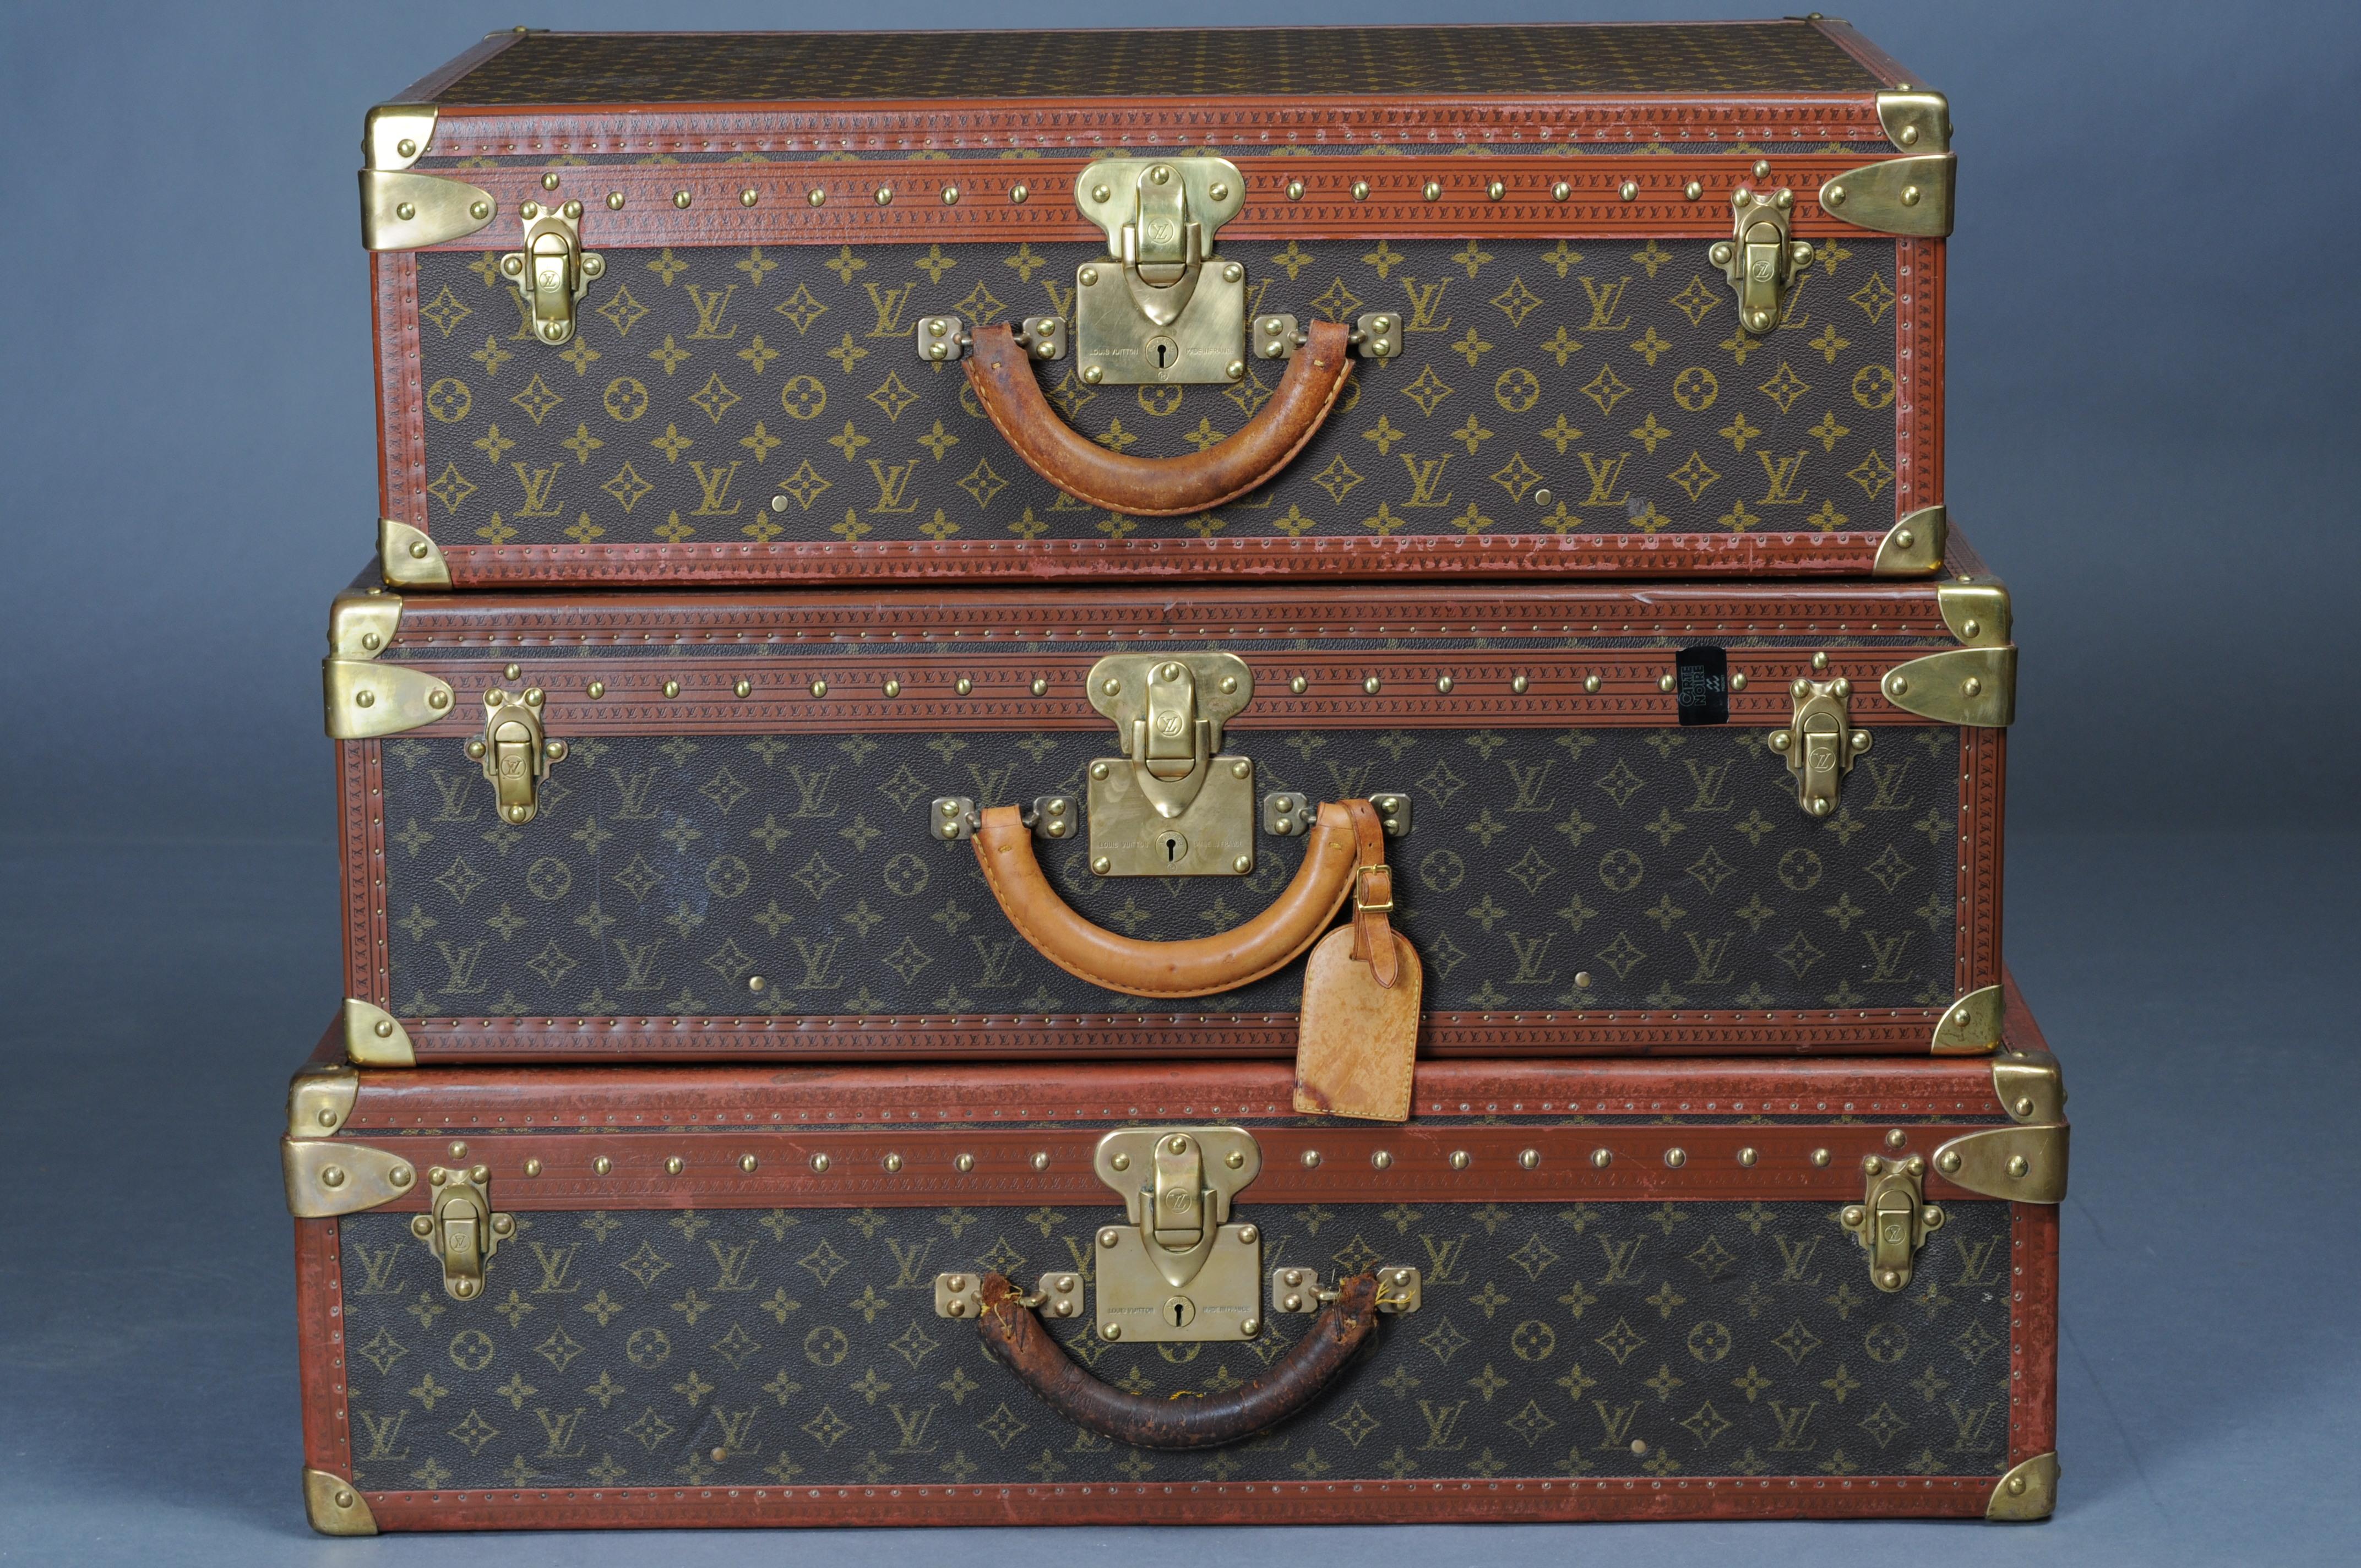 Sammlung von 3 Koffern
Modell Alzer
Die Koffer sind sehr gut als Dekoration geeignet
3 verschiedene Größen
Breite 80 cm, 75 cm, 70 cm
Die Koffer sind in einem historisch guten Zustand.
Sie stammen aus den 1970er-1990er Jahren
